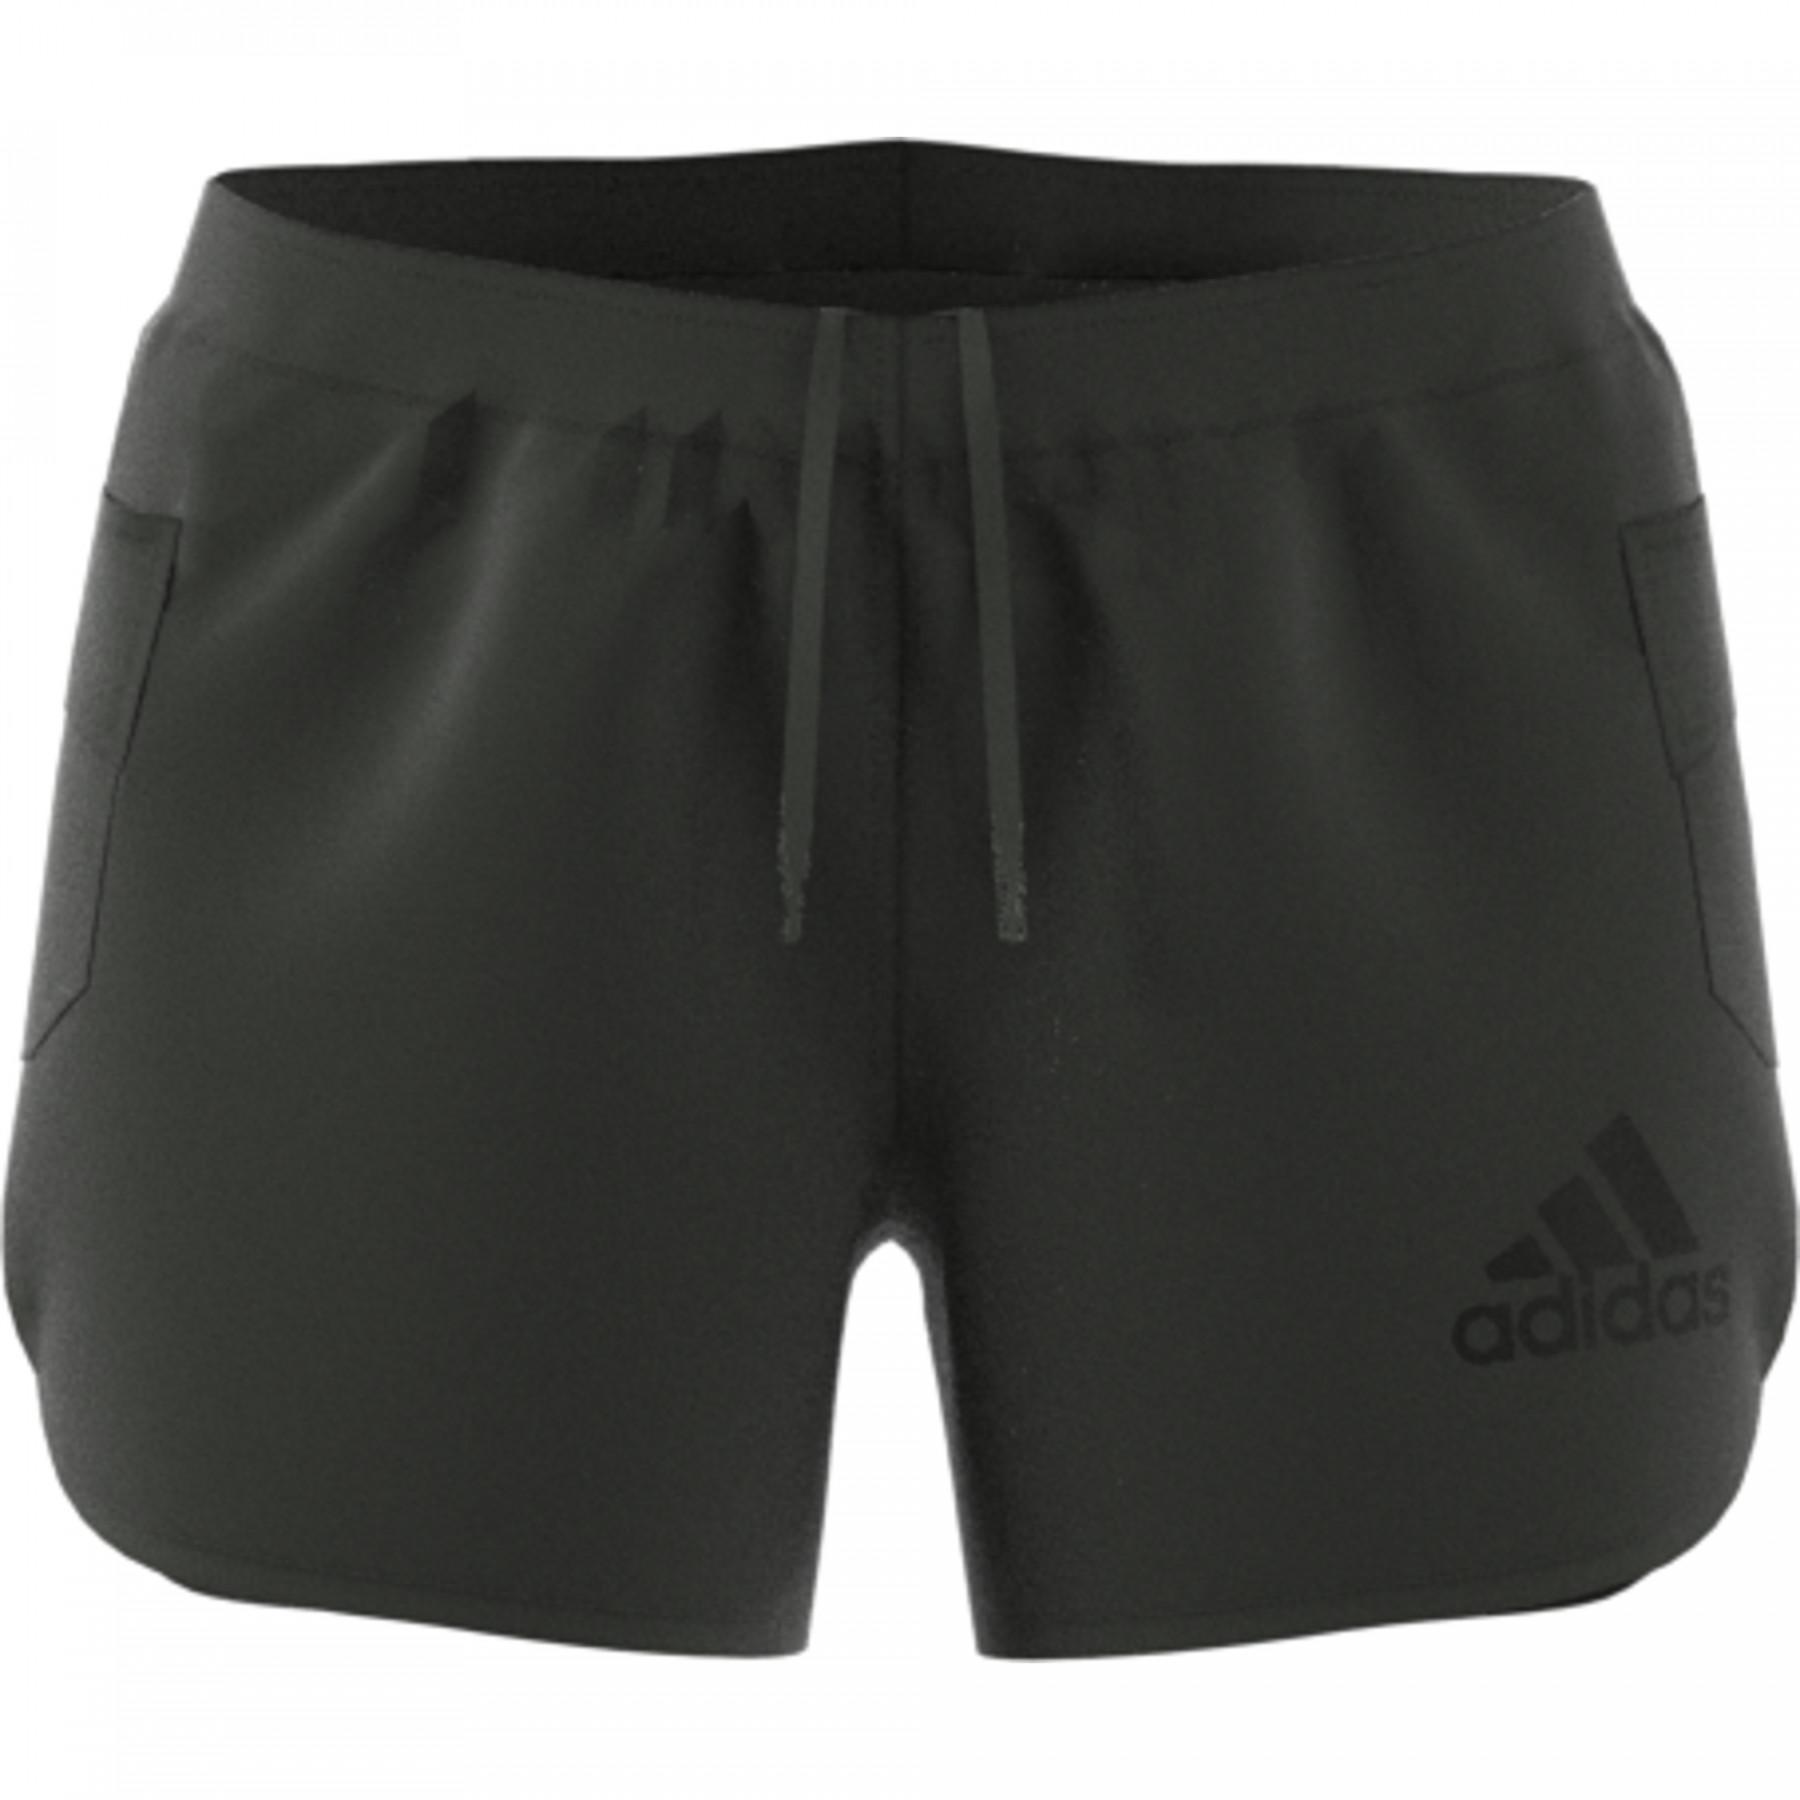 Dames shorts adidas Rise Up N Run Marathon 20